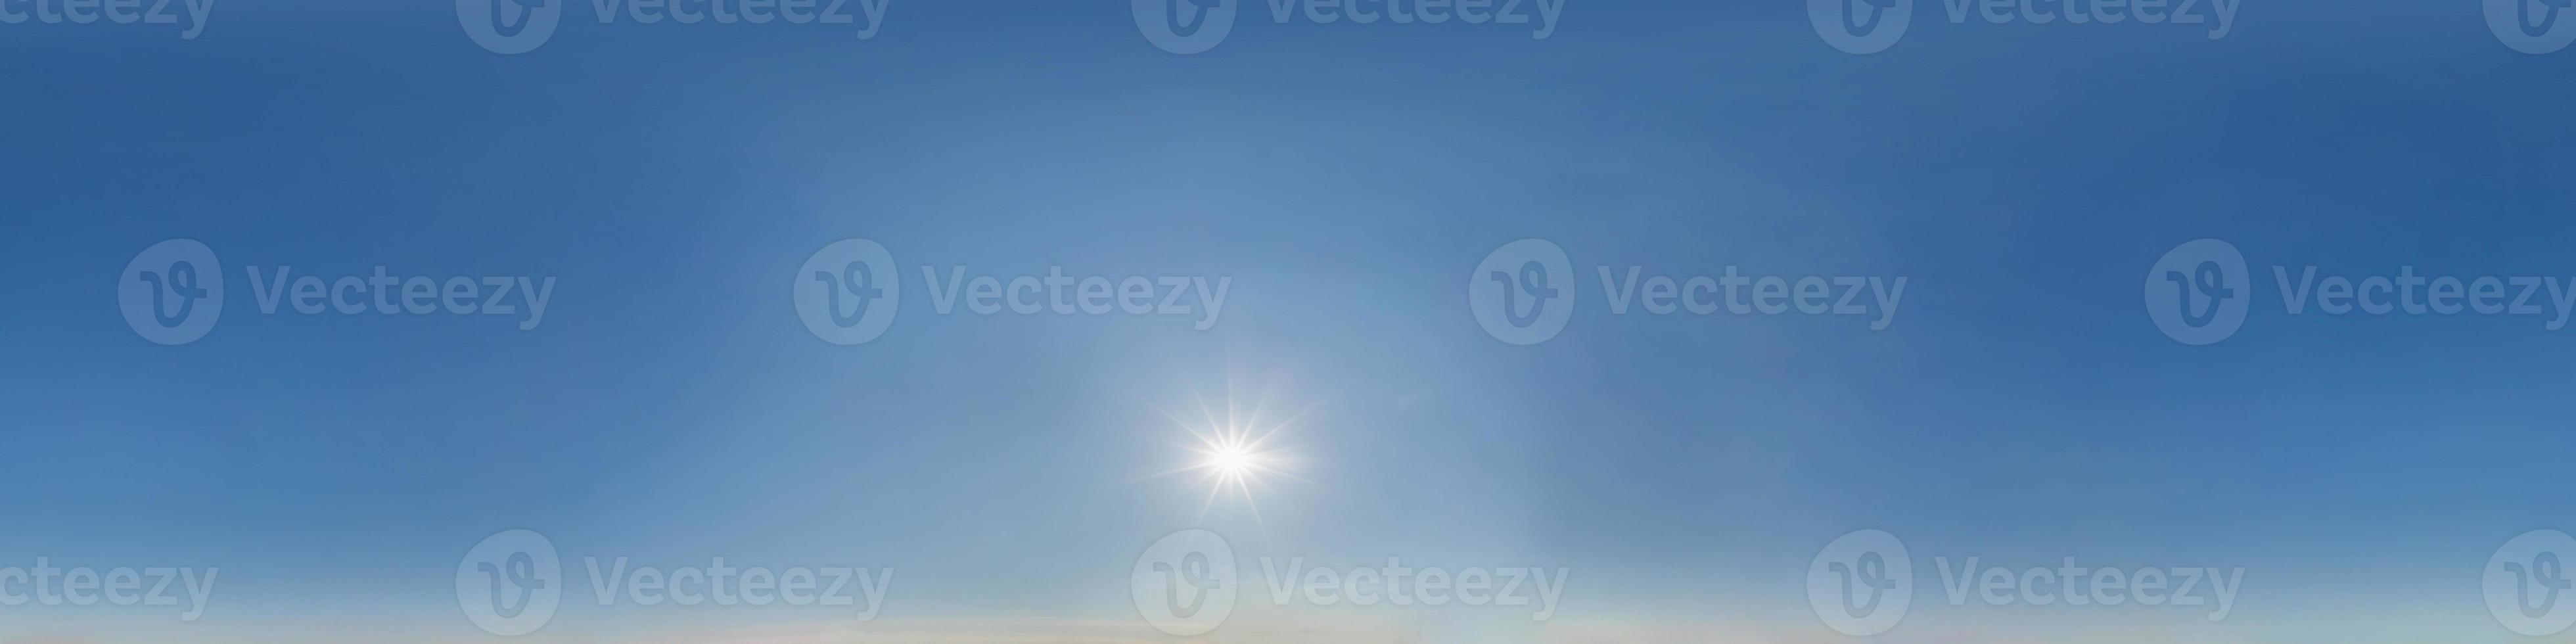 cielo azul claro con sol abrasador. vista de ángulo de 360 grados de hdri sin costuras con cenit para usar en gráficos 3d o desarrollo de juegos como cúpula del cielo o editar toma de drones foto